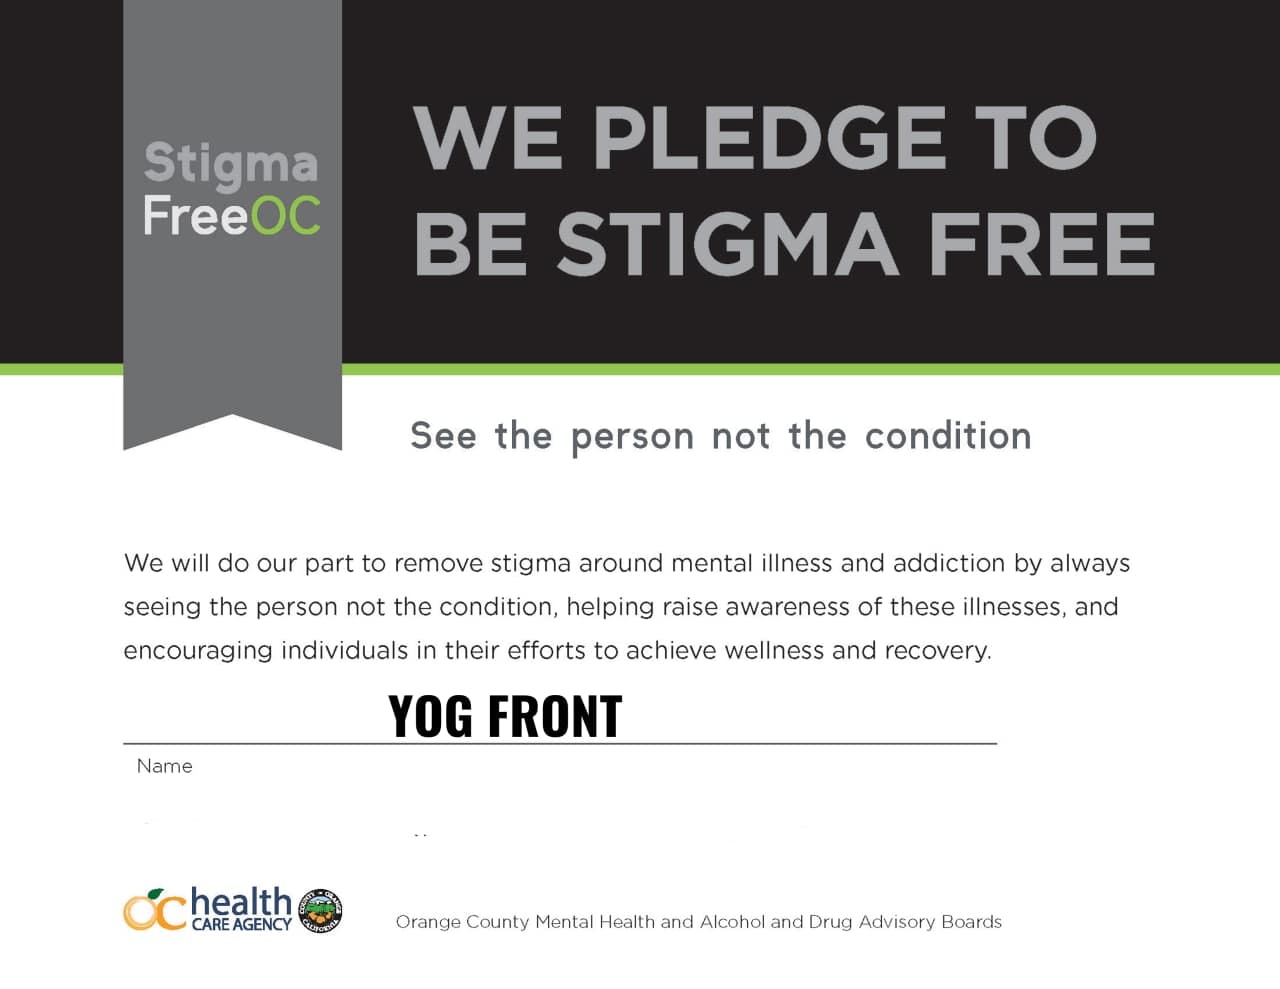 Stigma Free : Yog Front